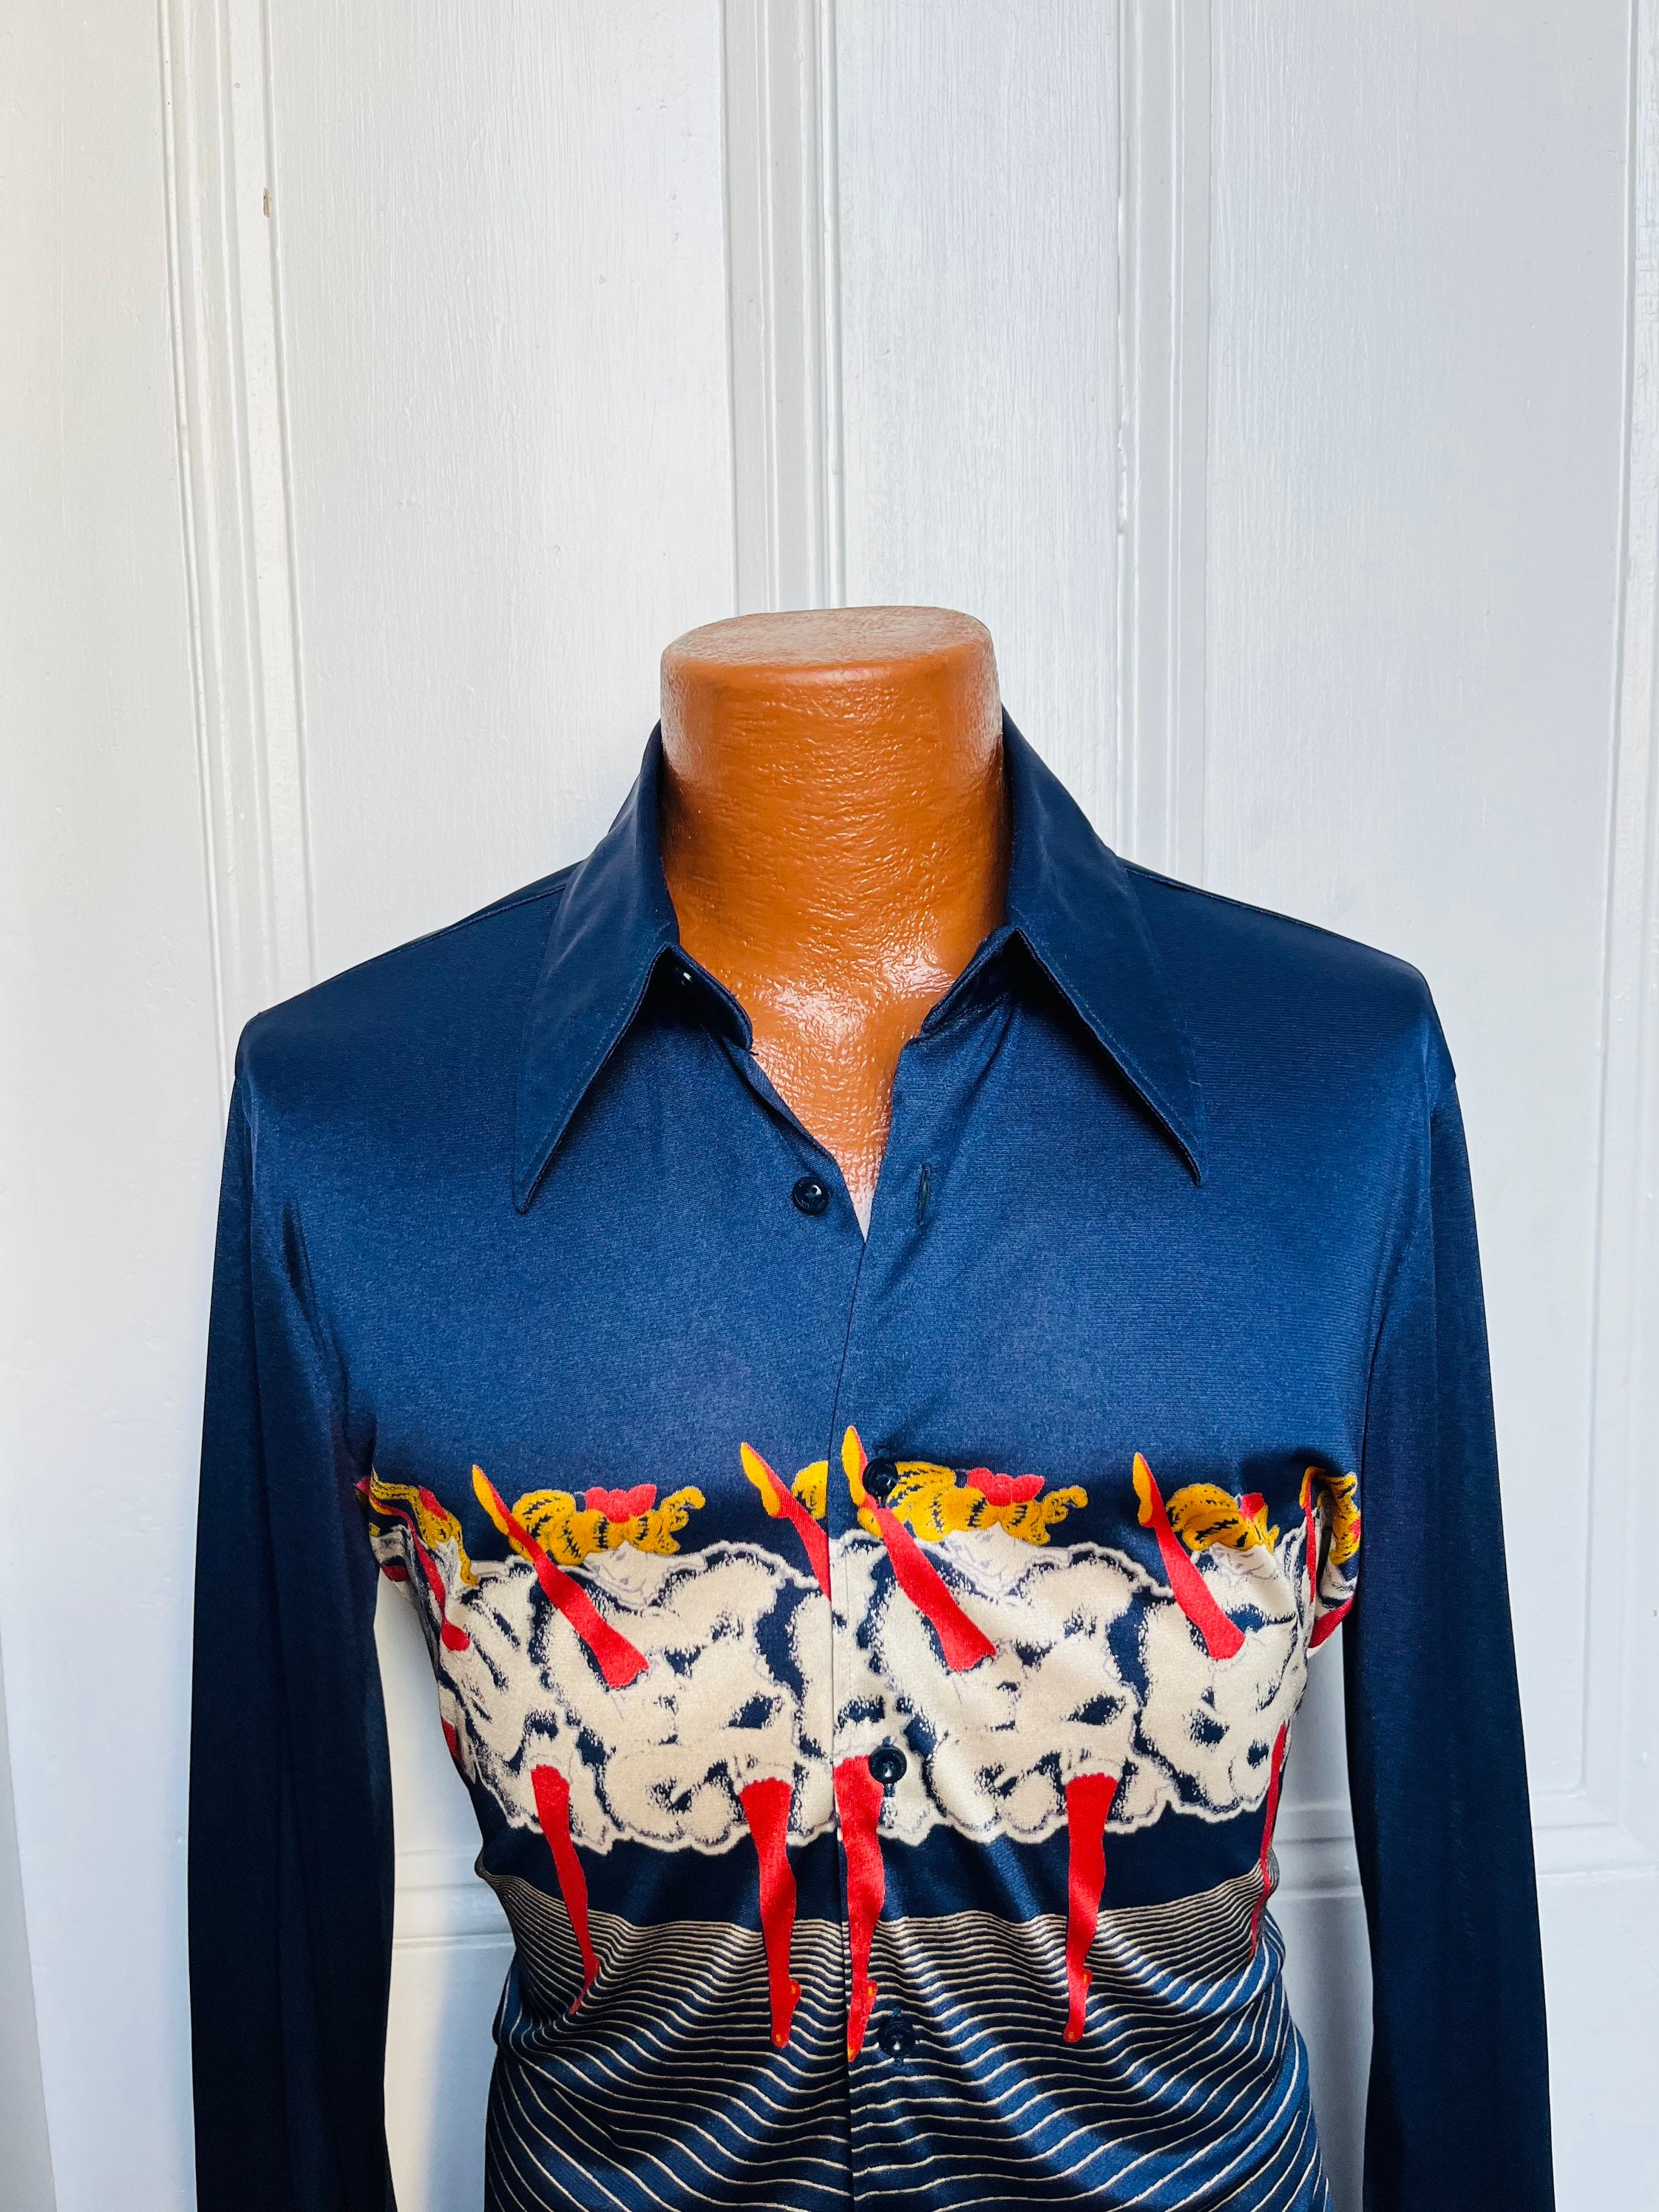 Marco Polo ondersteuning verontschuldigen 70's Vintage Men's Nik-nik Disco Shirt Parisian - Etsy